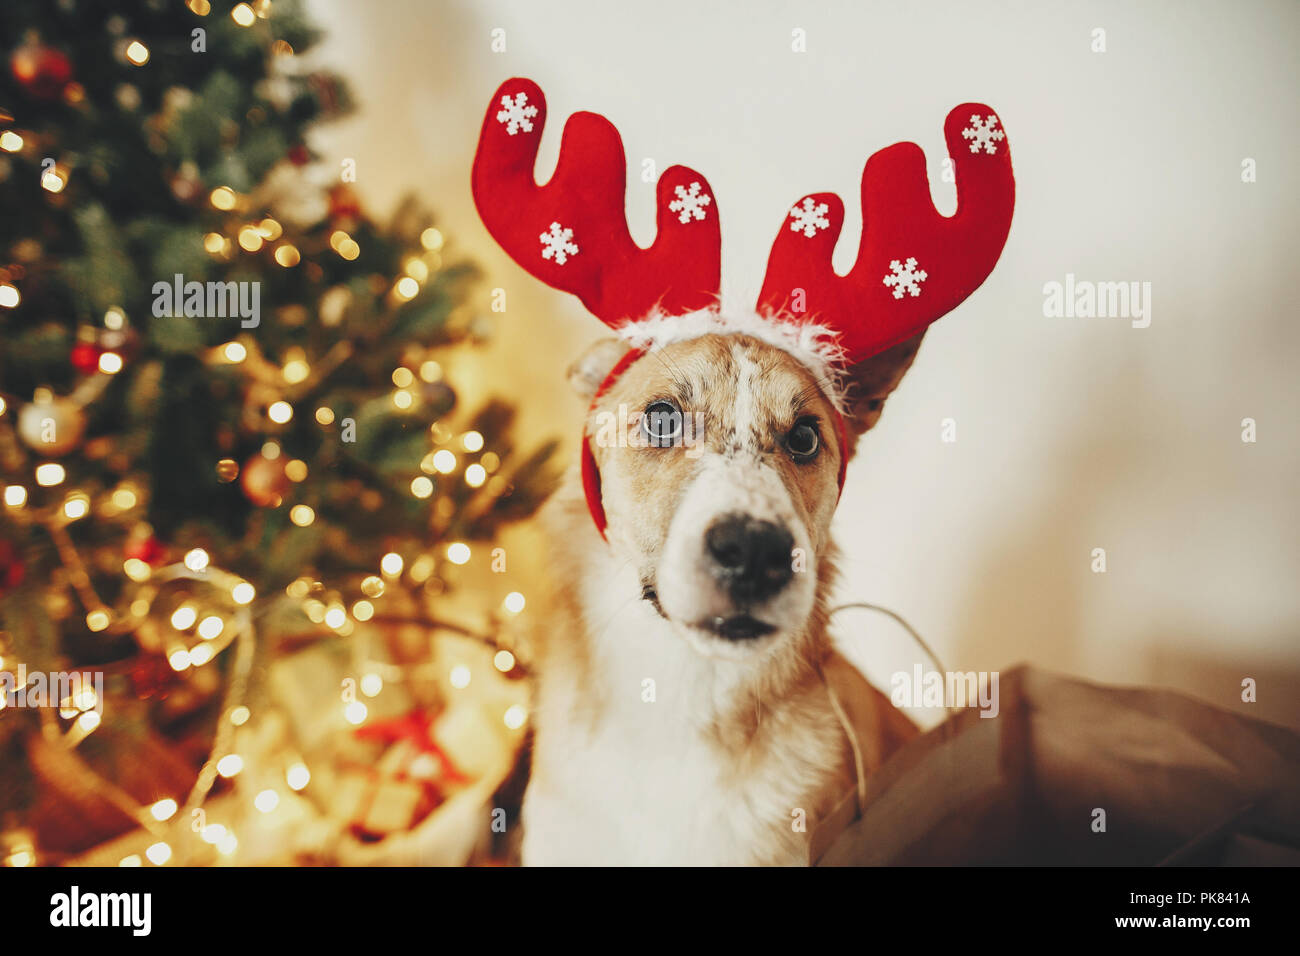 Lindo perro con cuernos de reno sentado sobre oro hermoso árbol de navidad con luces en la sala de fiestas. doggy con adorables ojos en glowi Fotografía de stock -